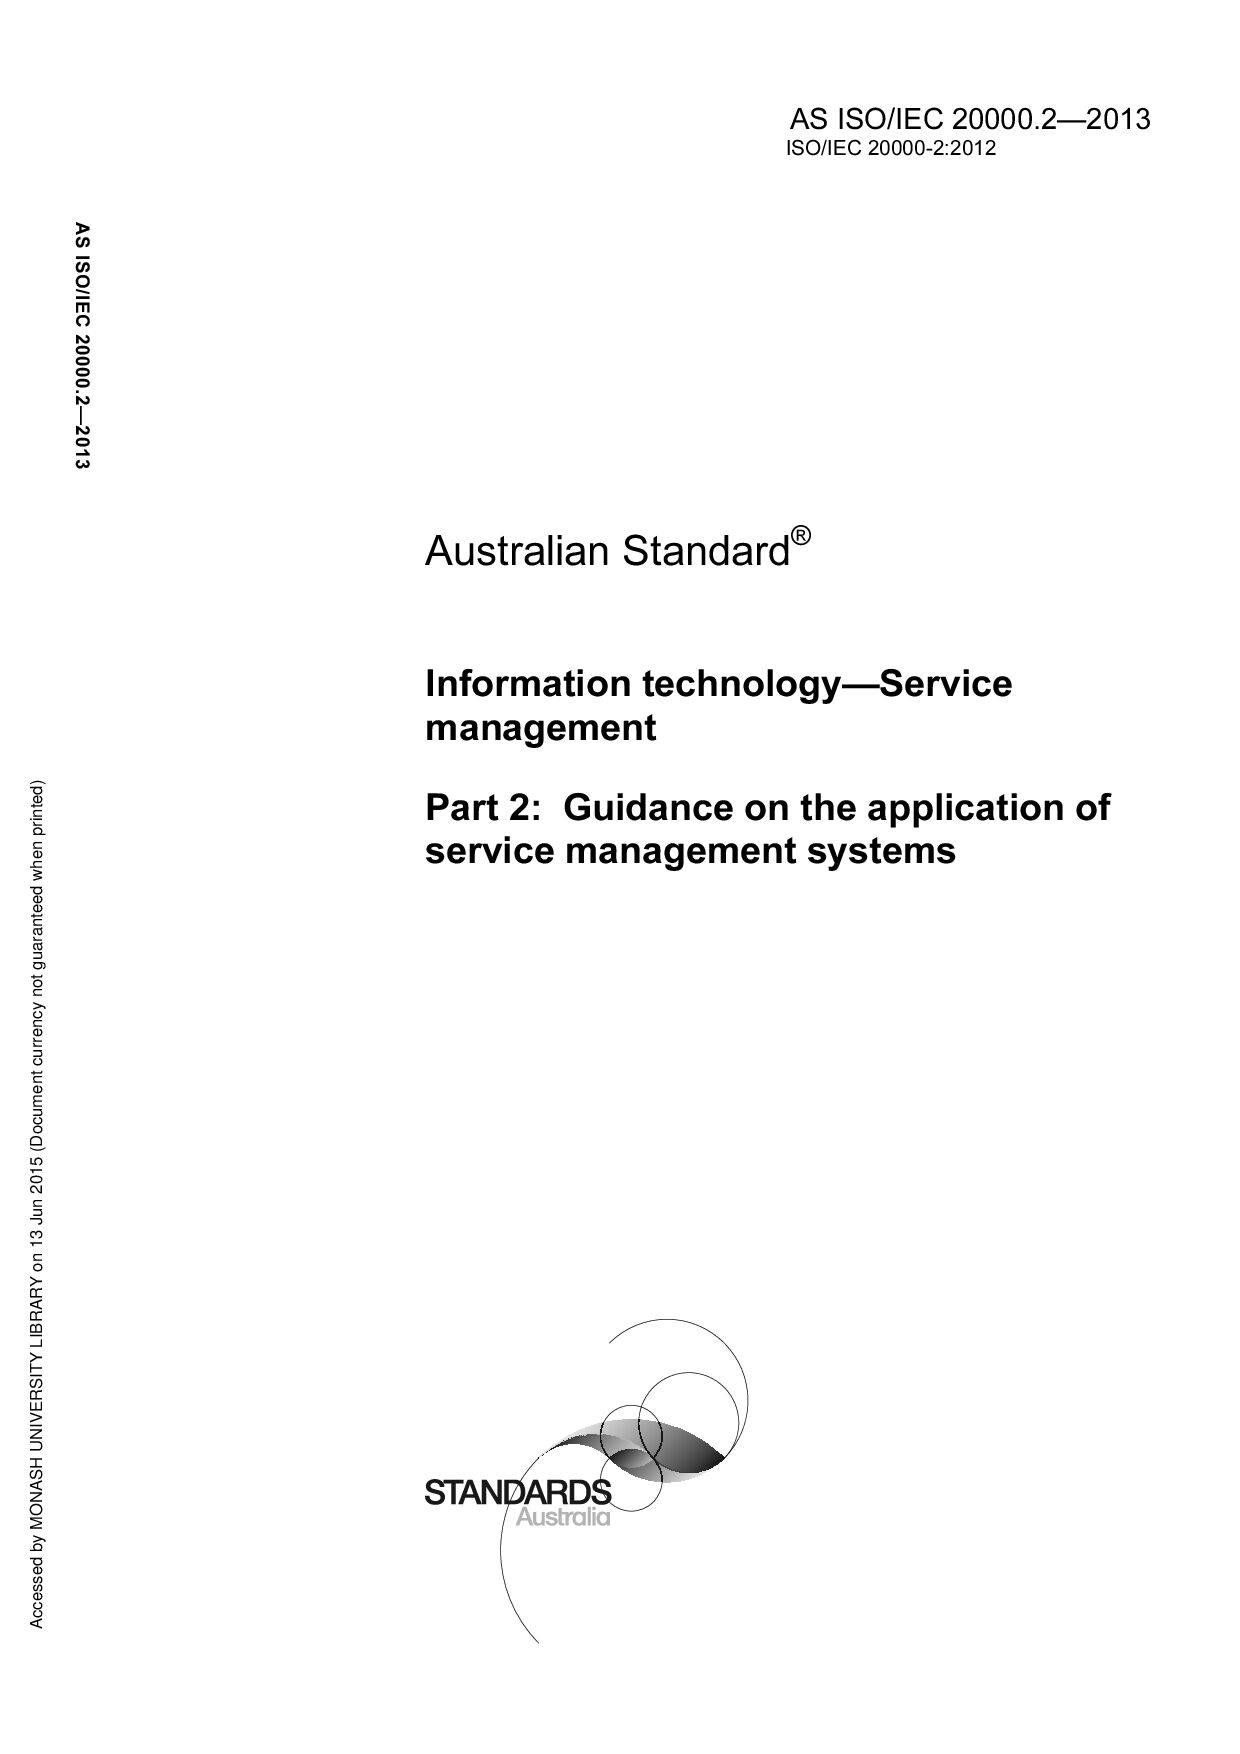 AS ISO/IEC 20000.2:2013封面图